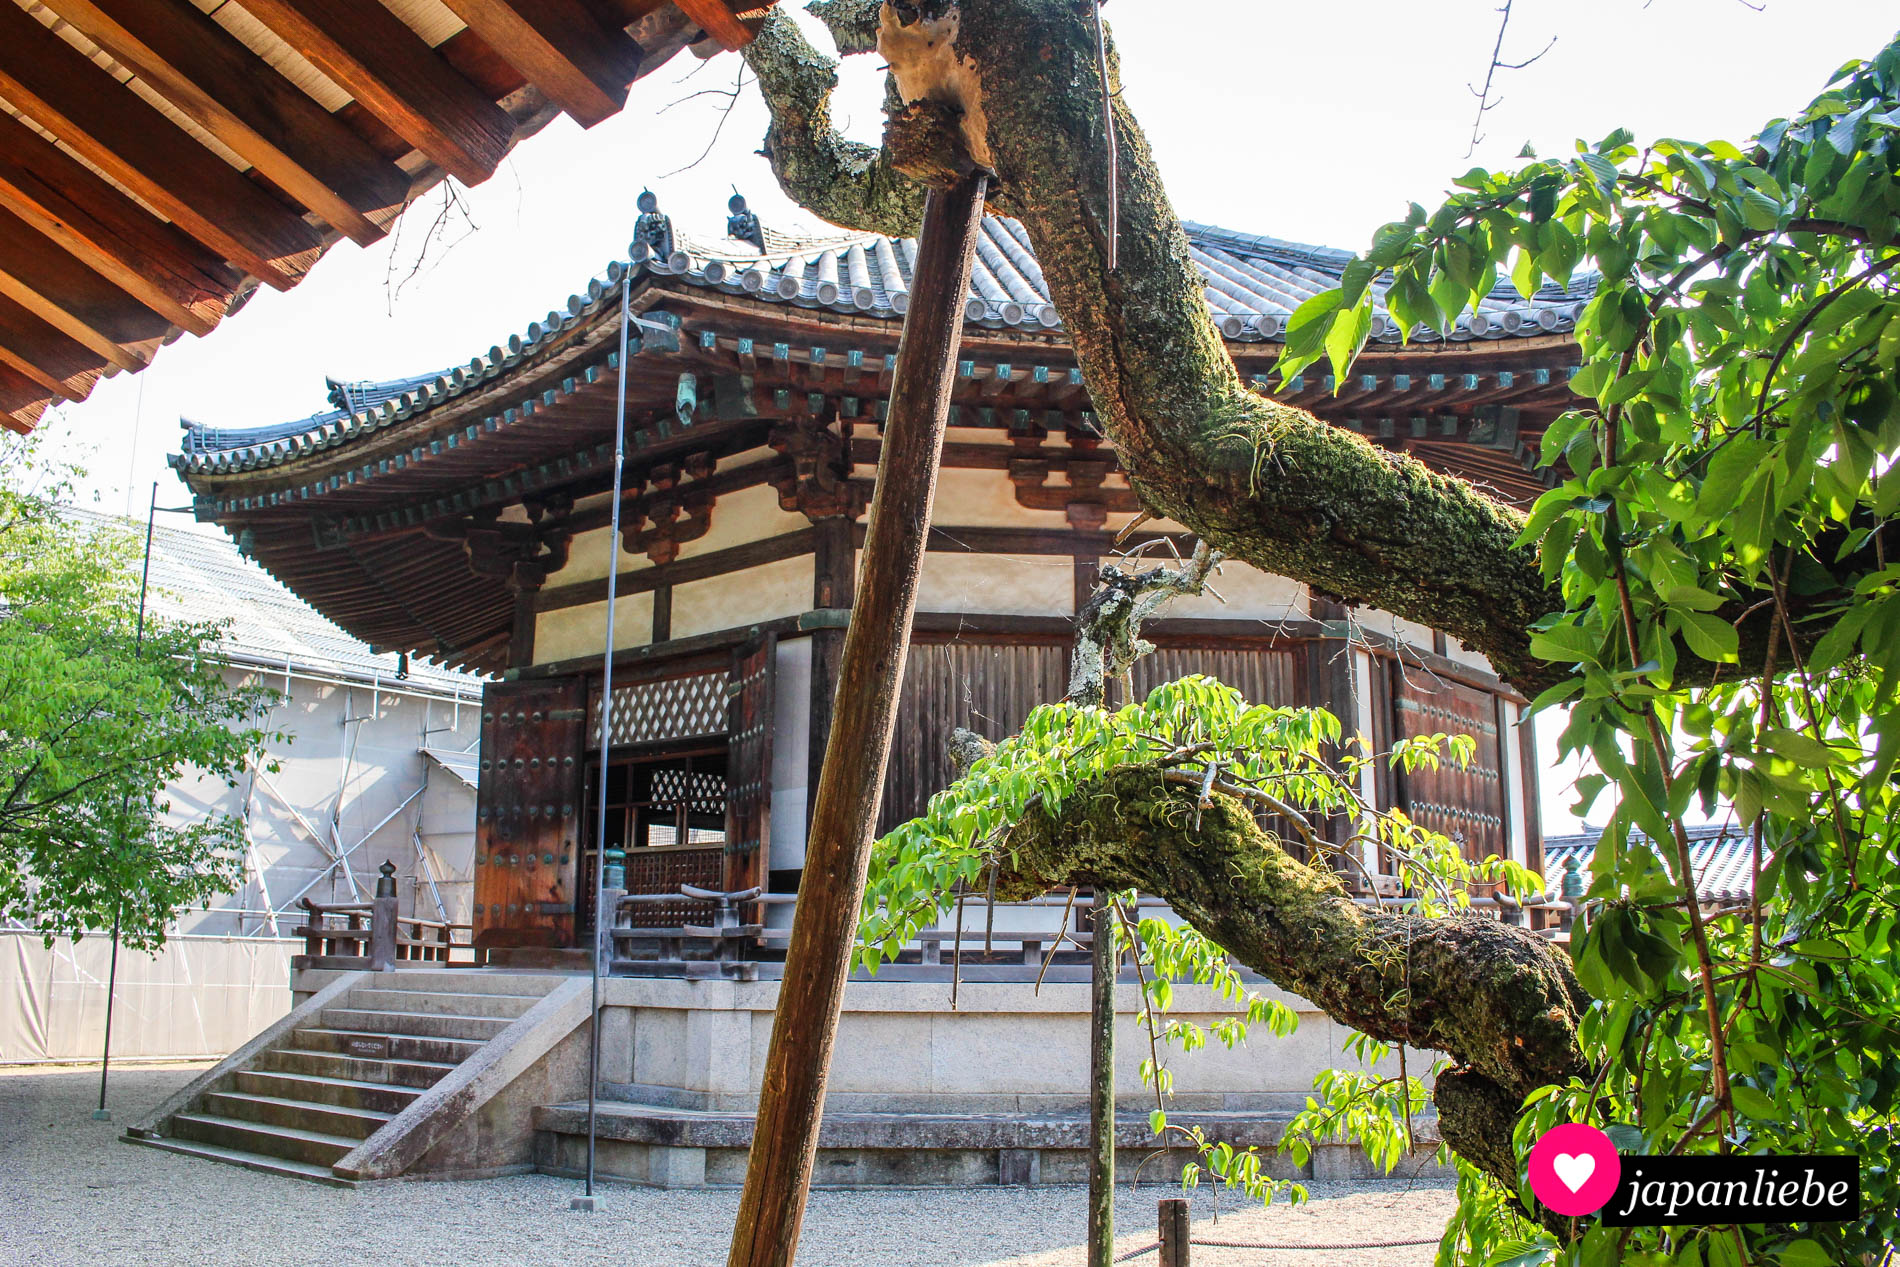 Sticht sofort durch ihre achteckige Form ins Auge: die Yumenodō-Halle, in der sich eine lebensgroße Figur von Prinz Shōtoku befindet.